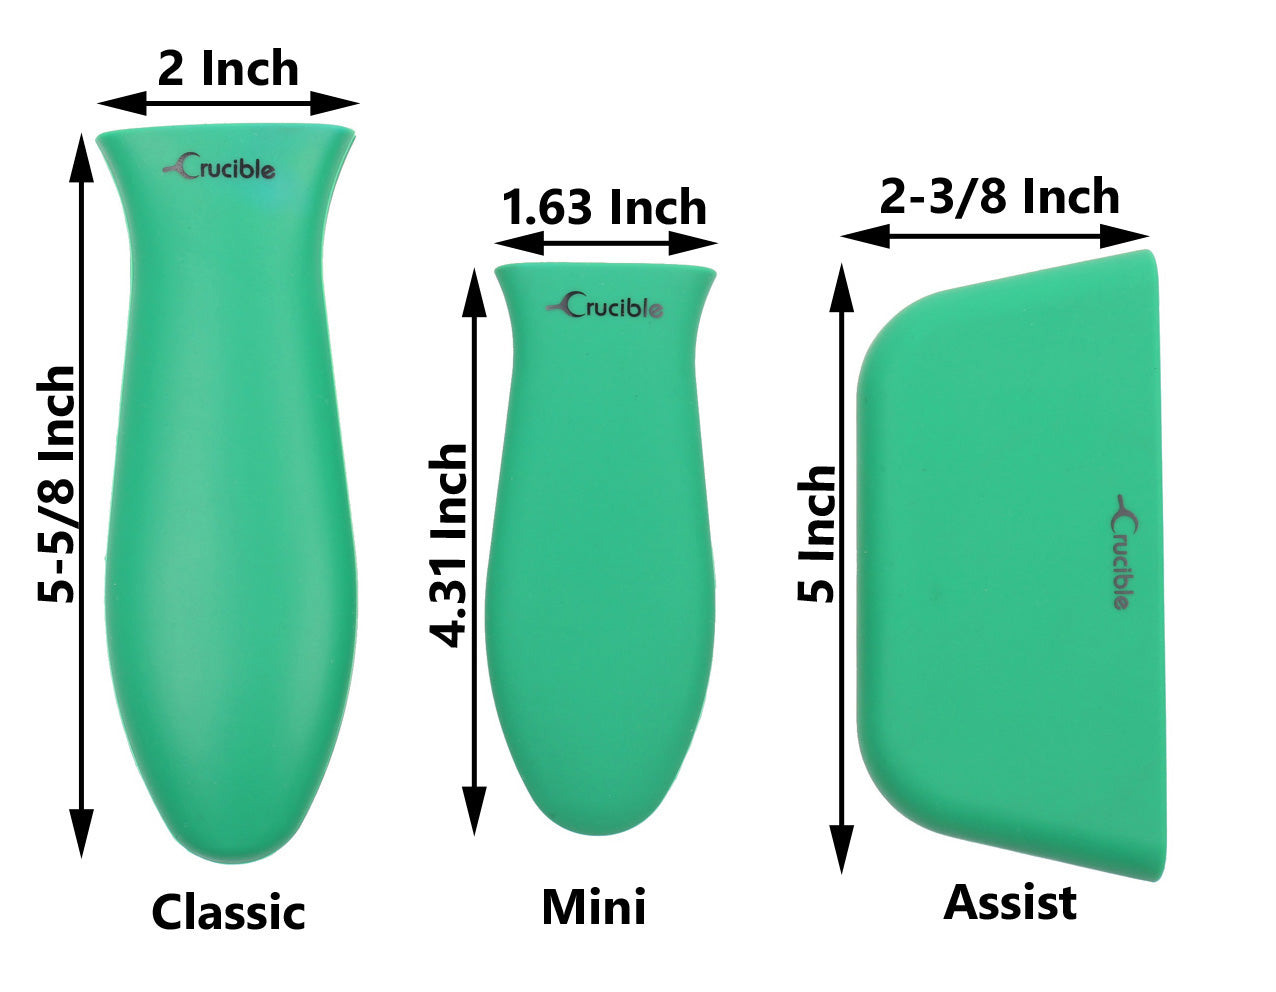 硅胶热手柄支架、隔热垫（3 件装混合绿色）、套筒握把、手柄套